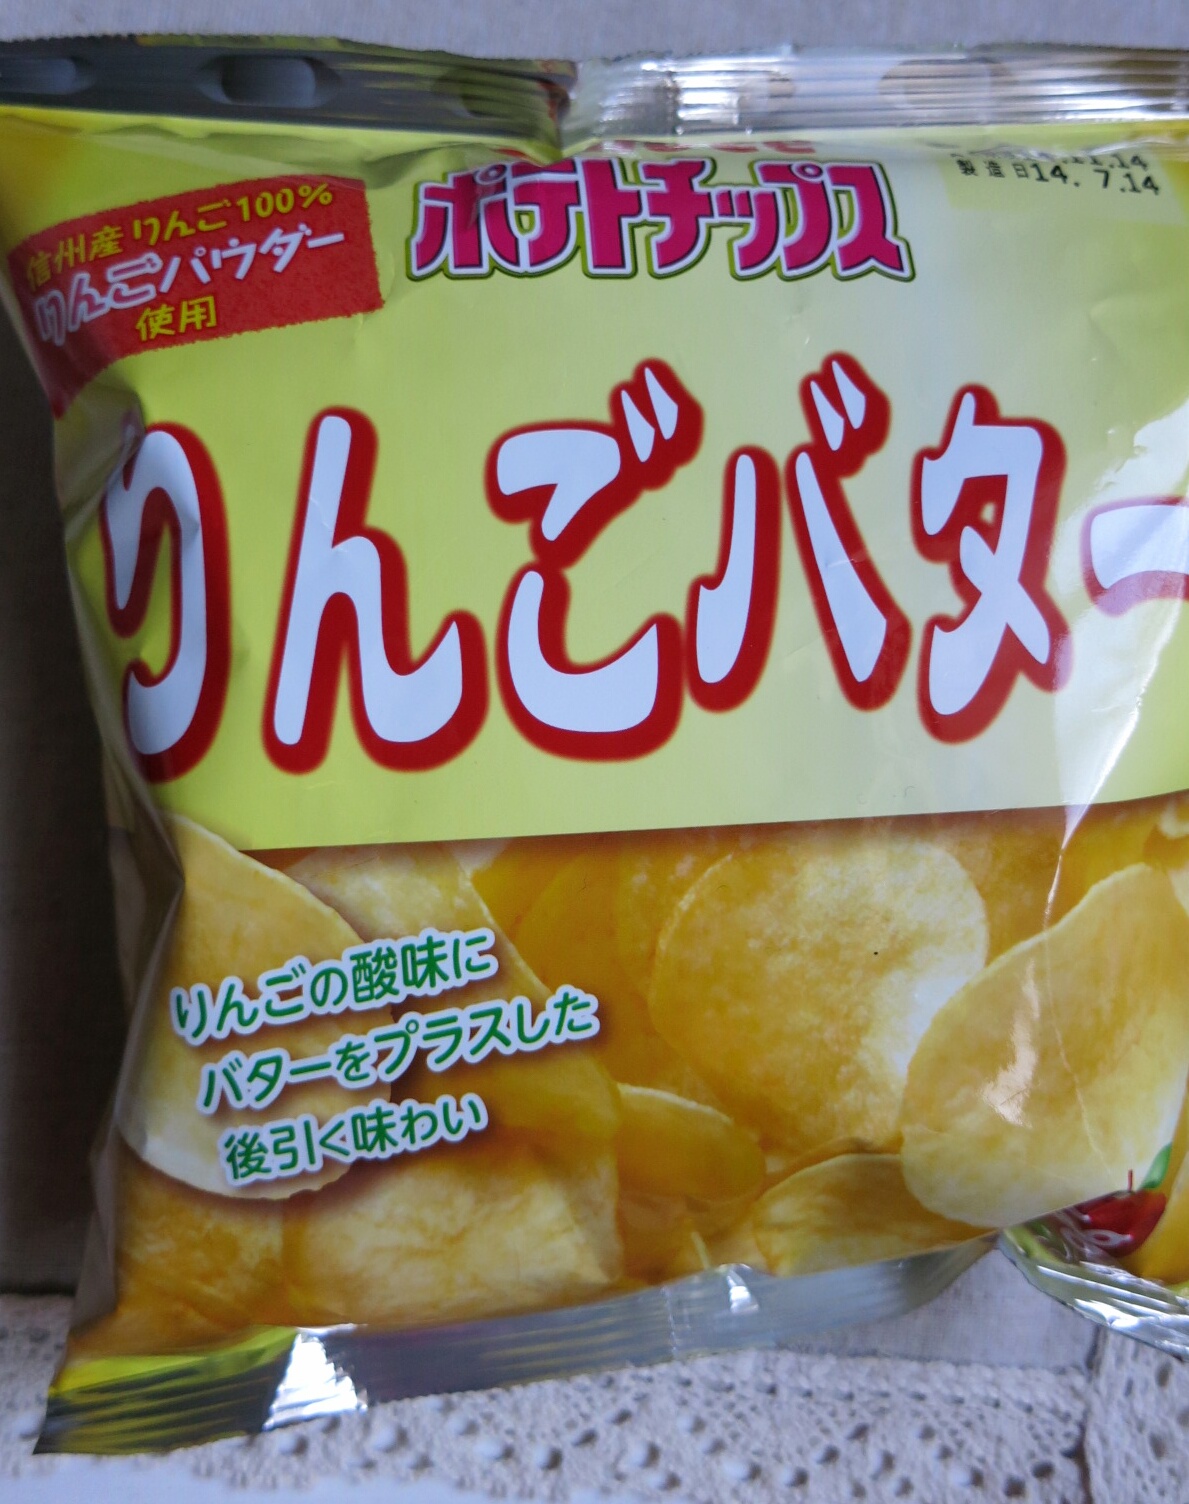 ツルヤ カルビー りんごバターポテトチップス 食べてみました ぴきょログ 軽井沢でぐーたら生活